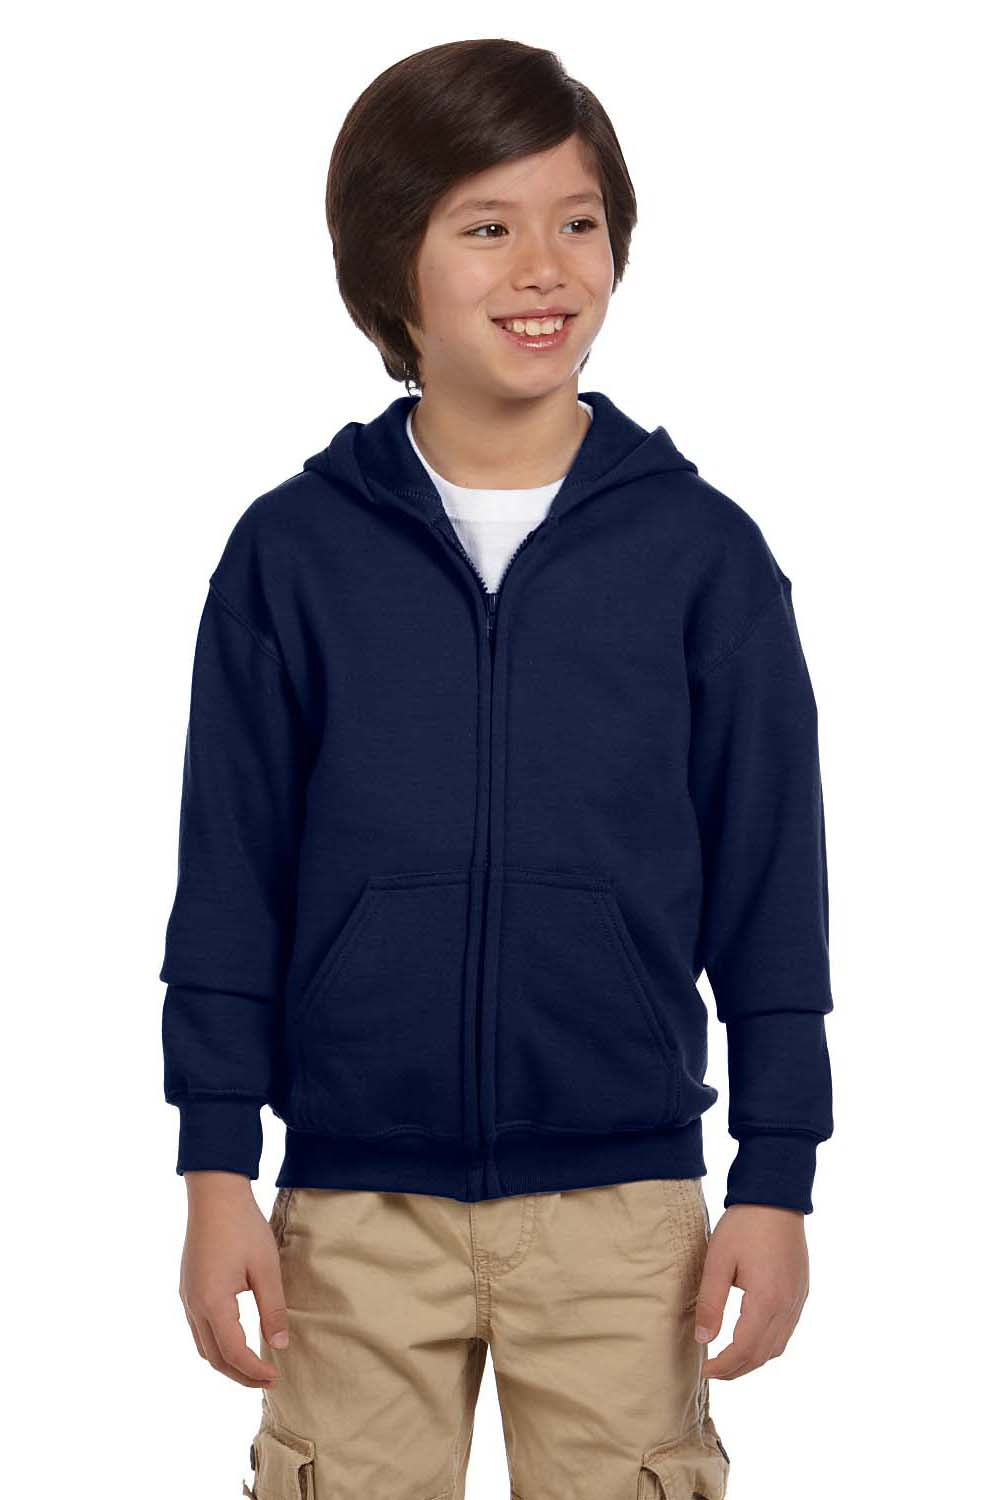 Gildan G186B Youth Full Zip Hooded Sweatshirt Hoodie Navy Blue Front